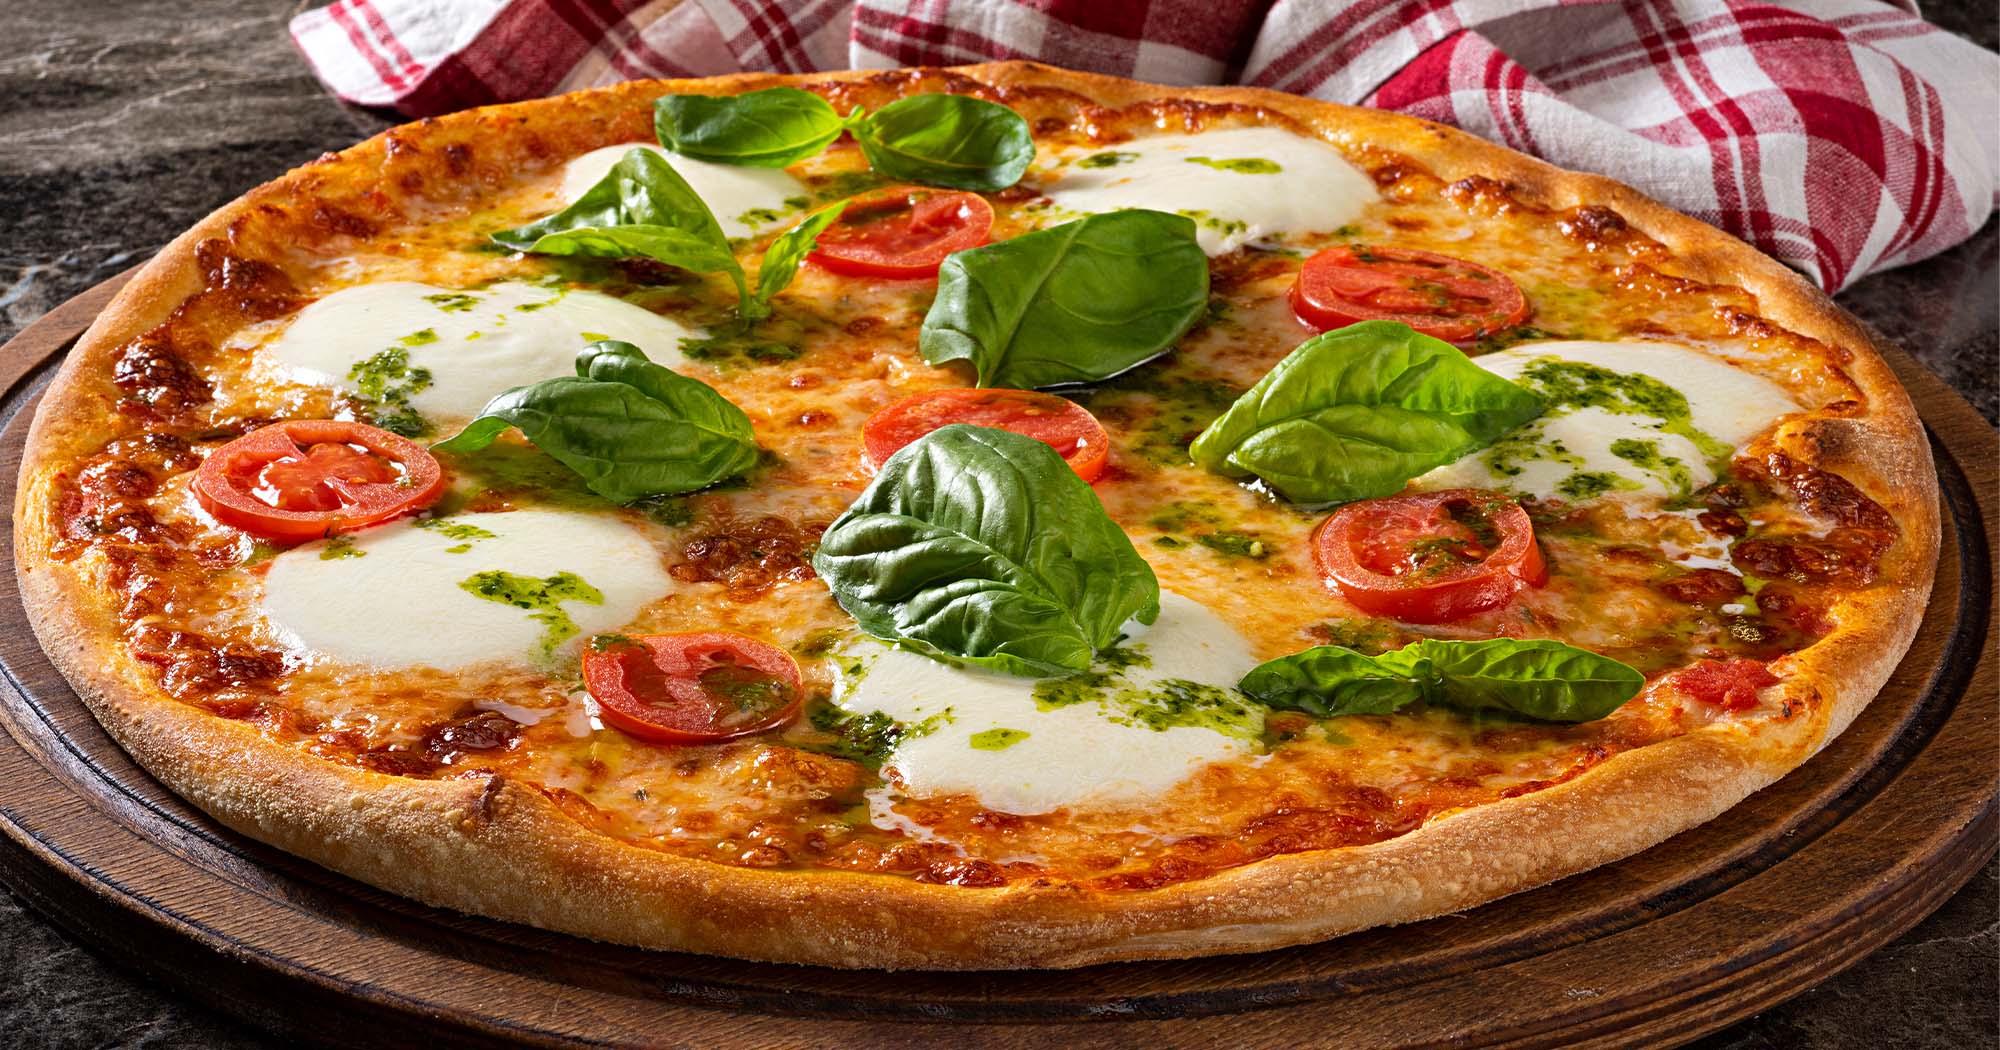 Sprawdź nową ofertę gastronomiczną Orlenu - spróbuj pizzy